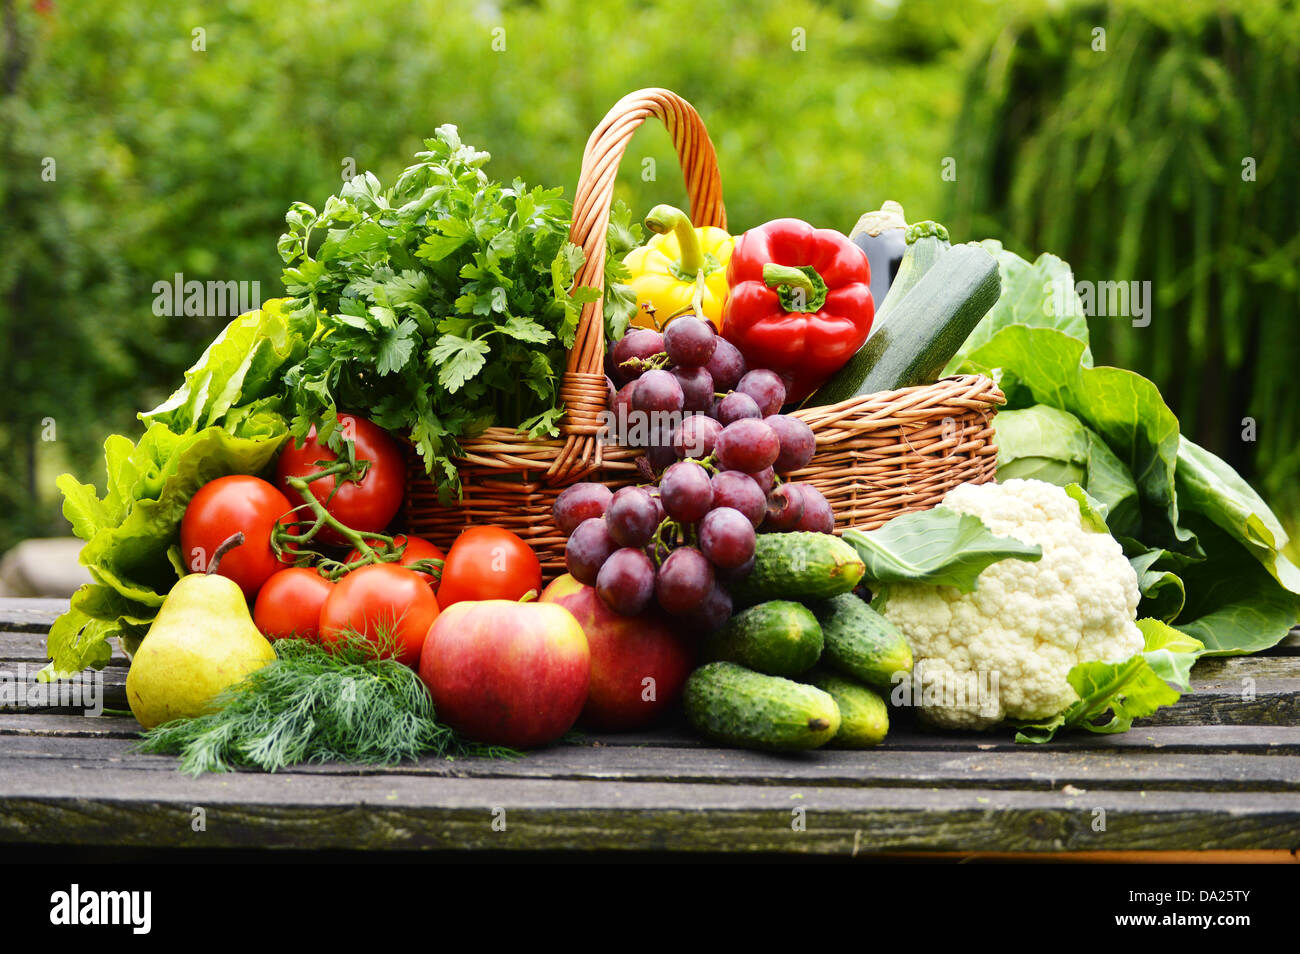 Fresche verdure organiche nel cesto di vimini in giardino Foto Stock